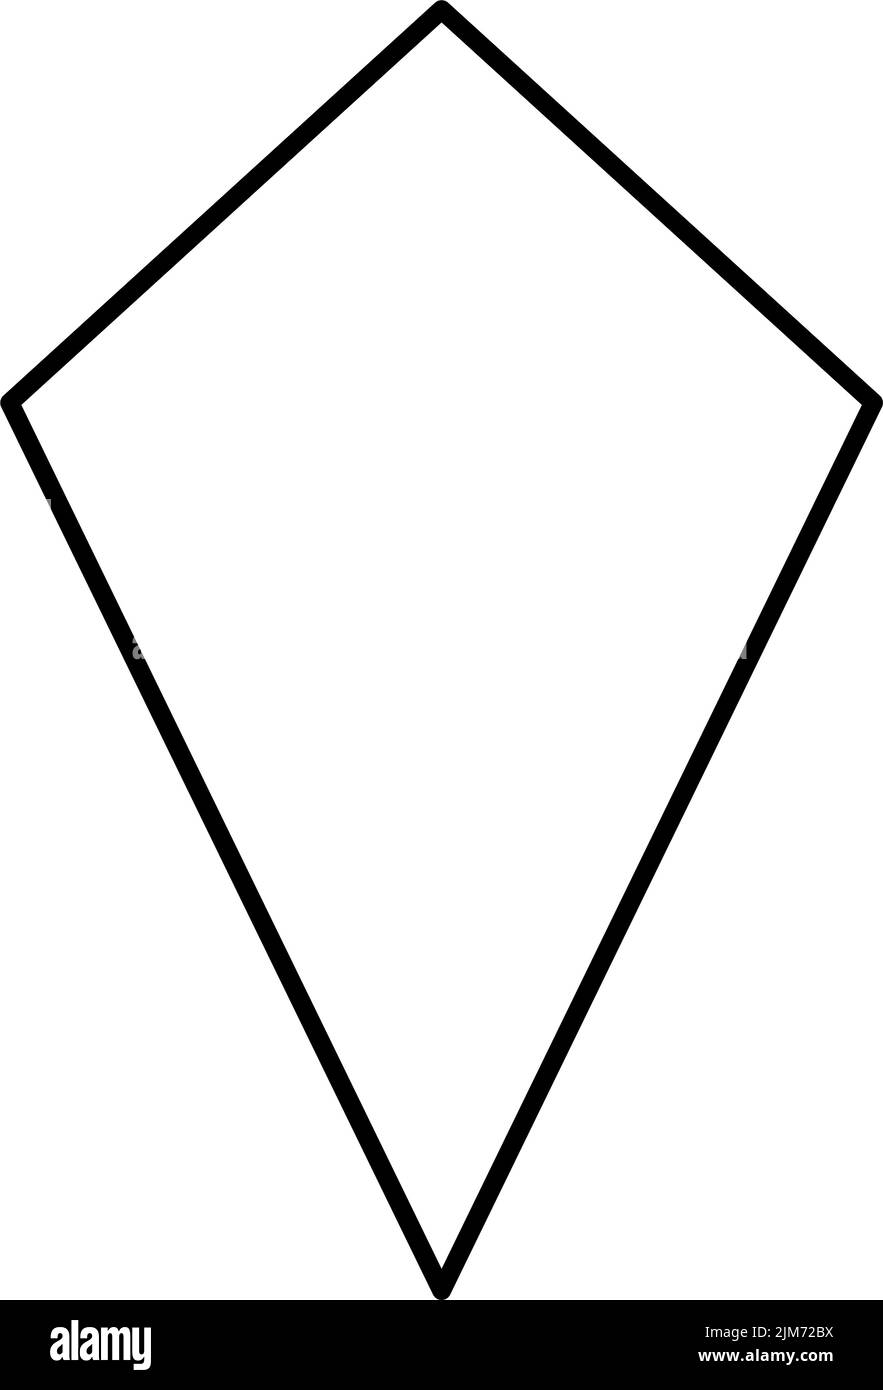 Kite geometric shape. Black outlines on white background. Stock Vector